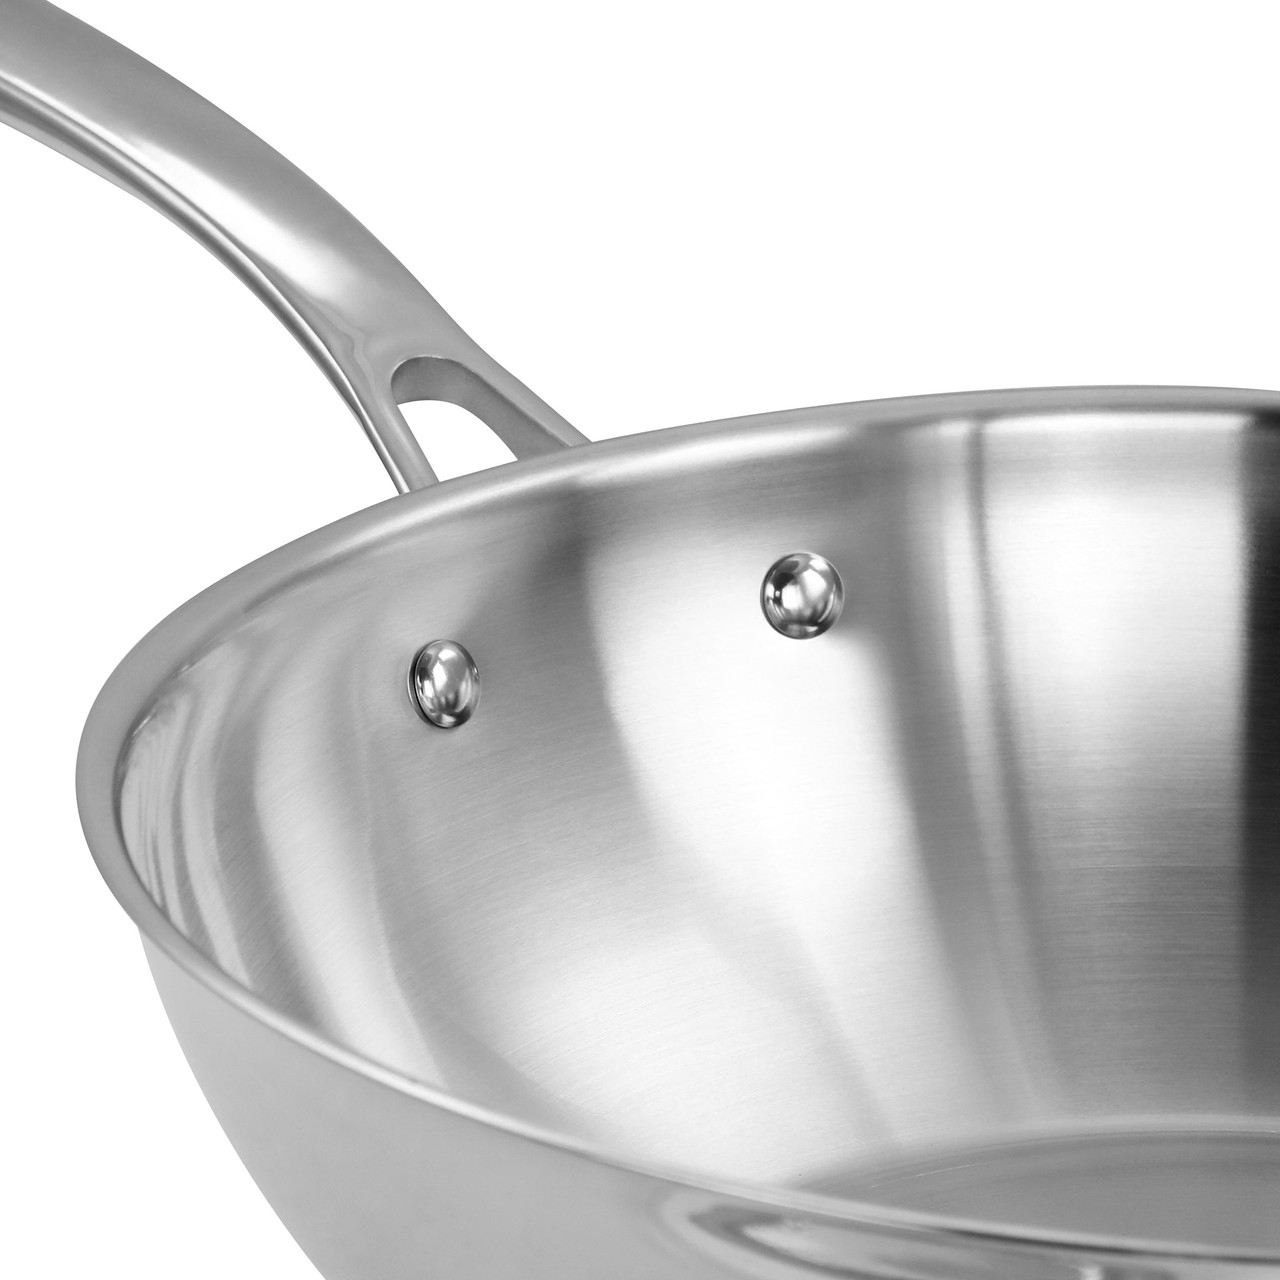 Martha Stewart Castelle 12 Stainless Steel Essential Pan w/ Steamer